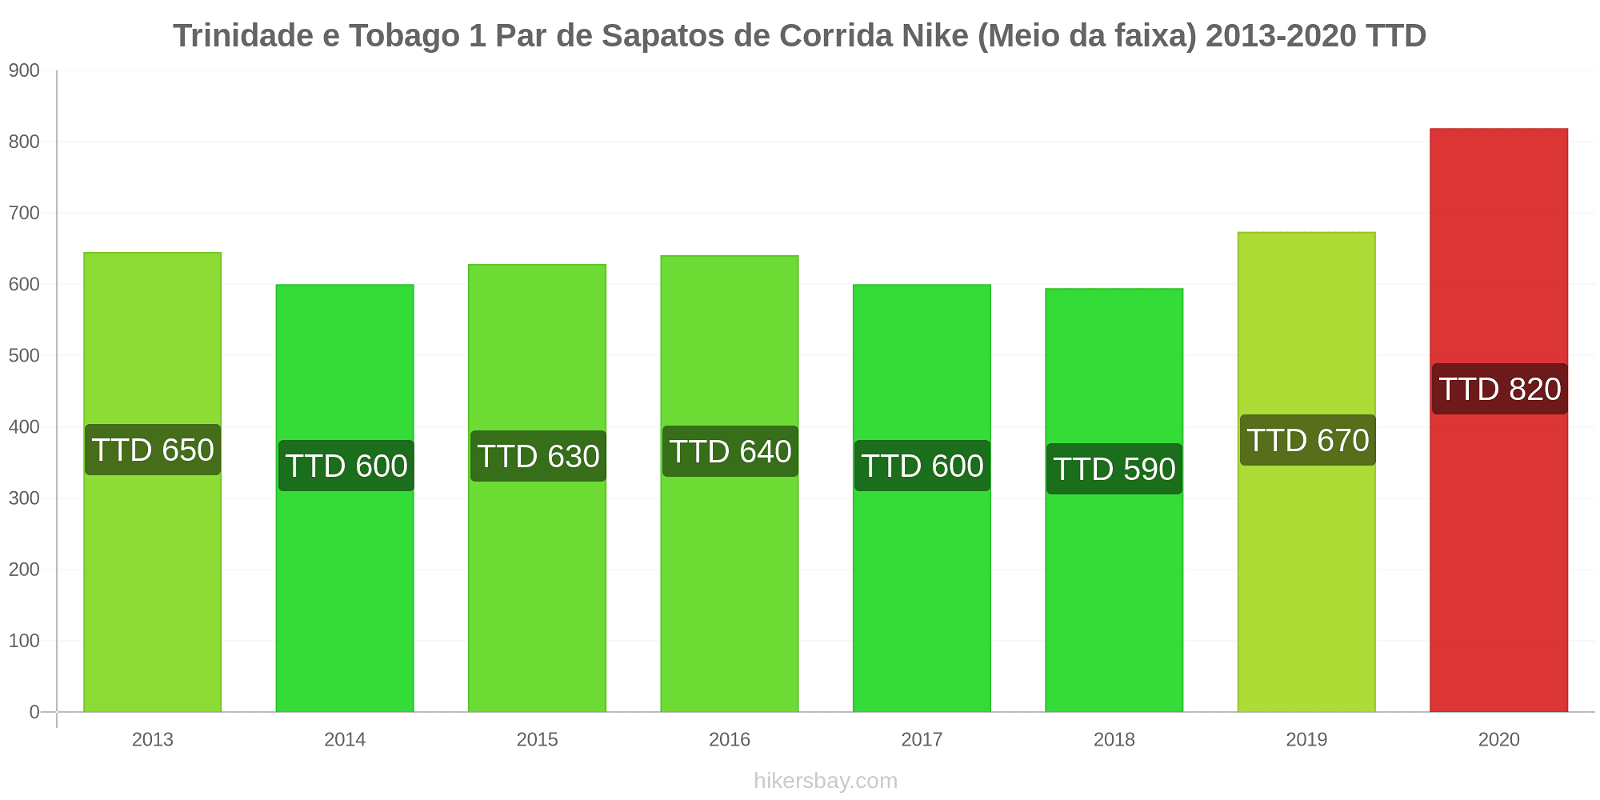 Trinidade e Tobago variação de preço 1 par de tênis Nike (mid-range) hikersbay.com